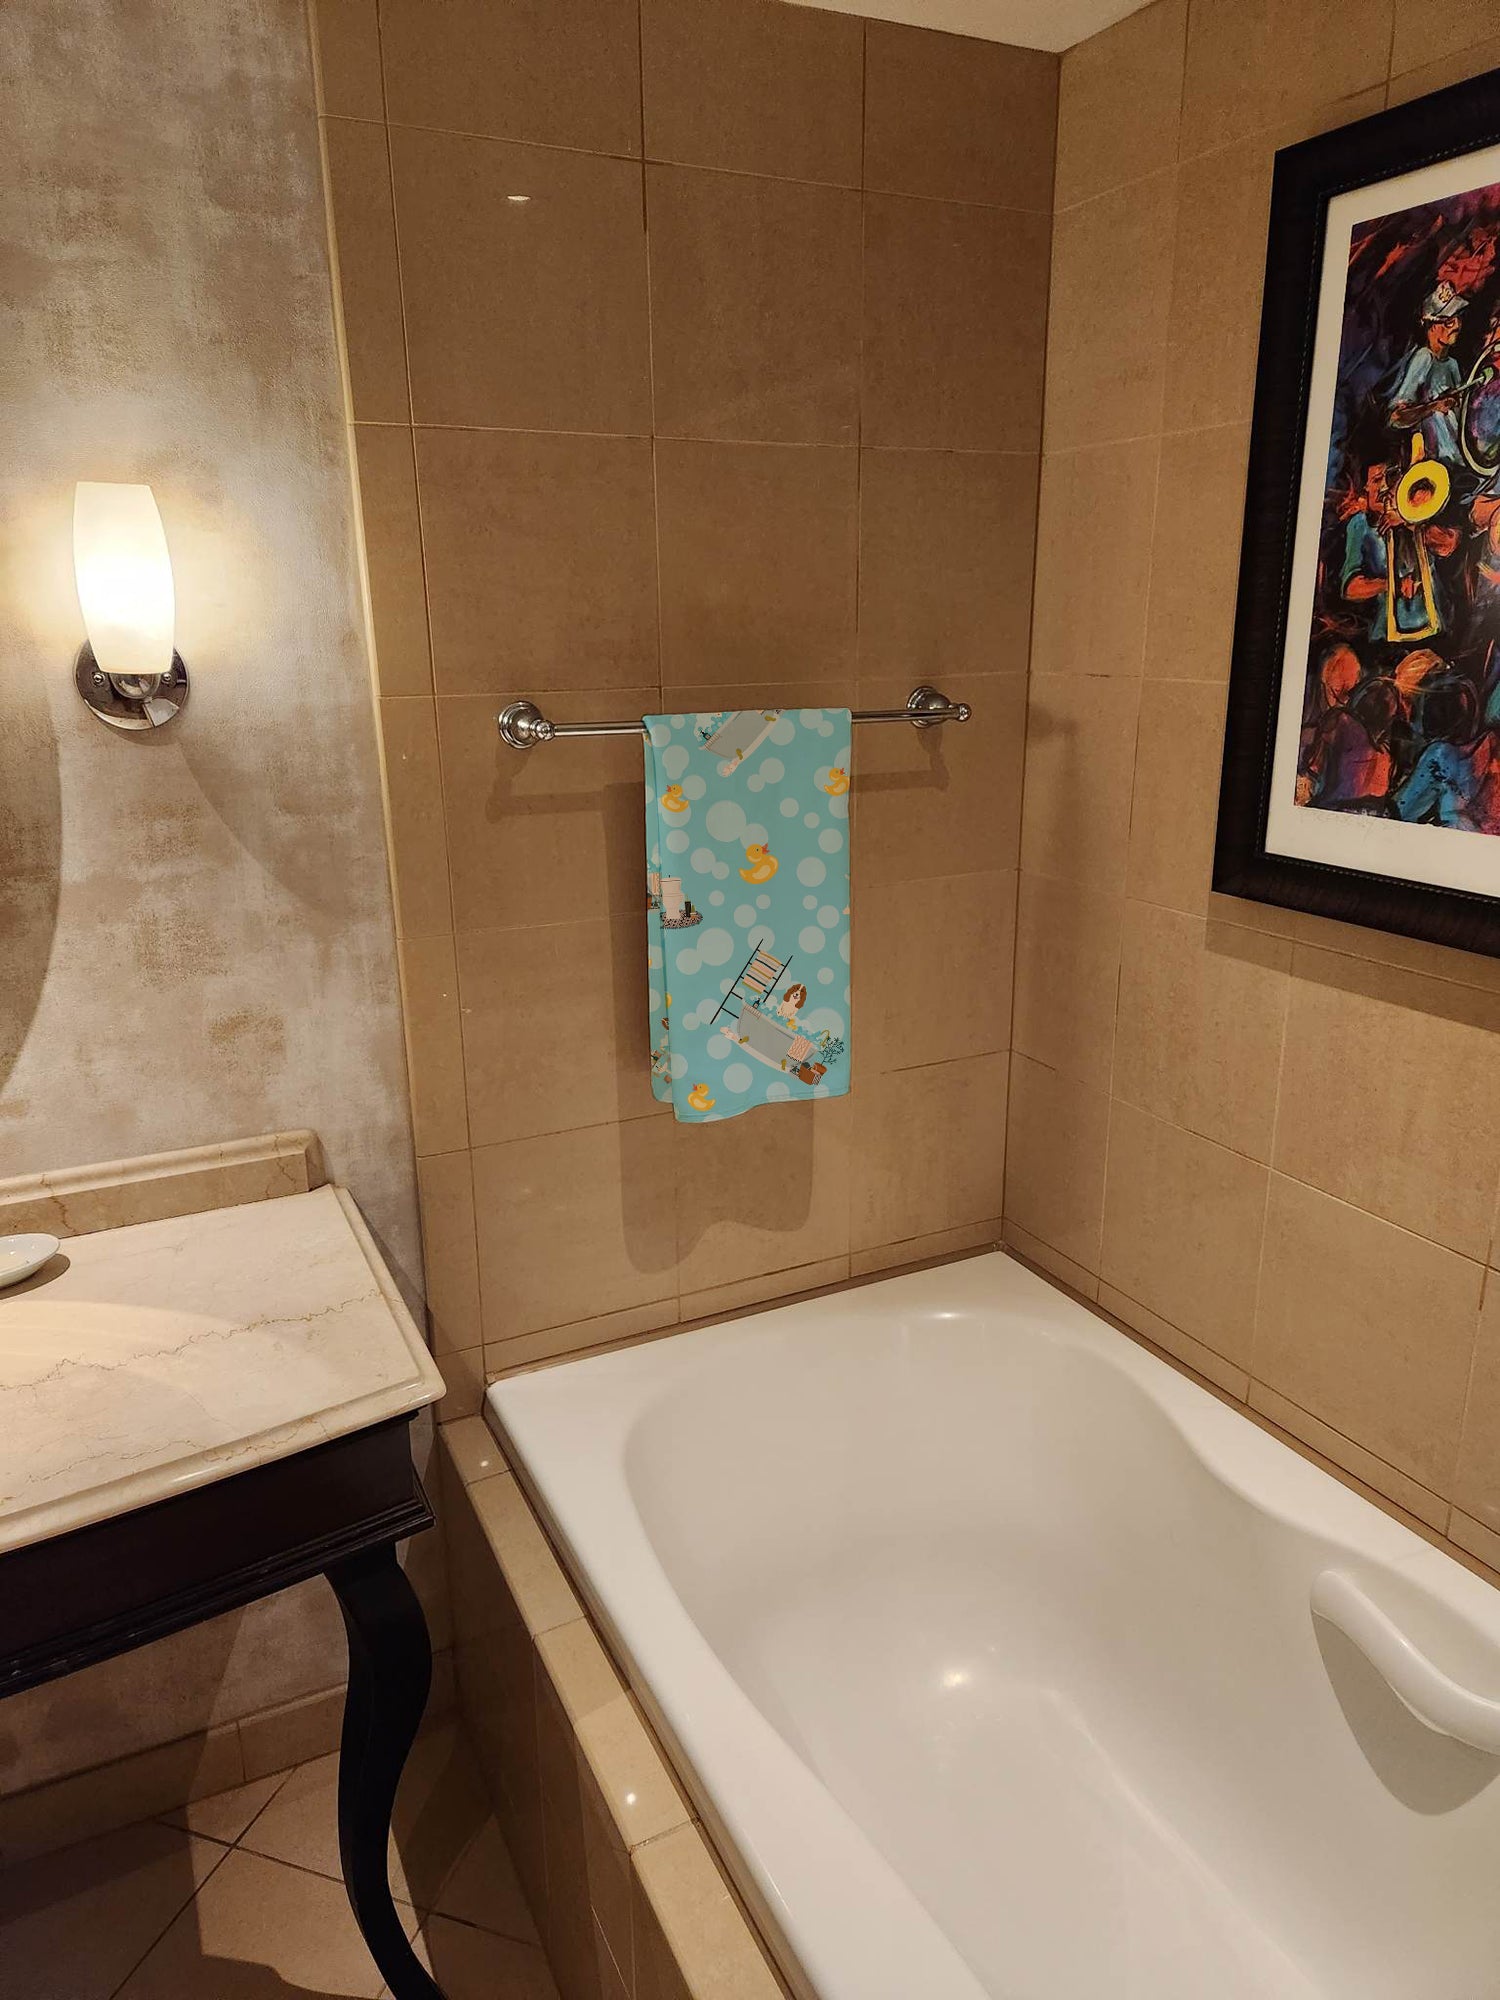 Russian Spaniel in Bathtub Bath Towel Large